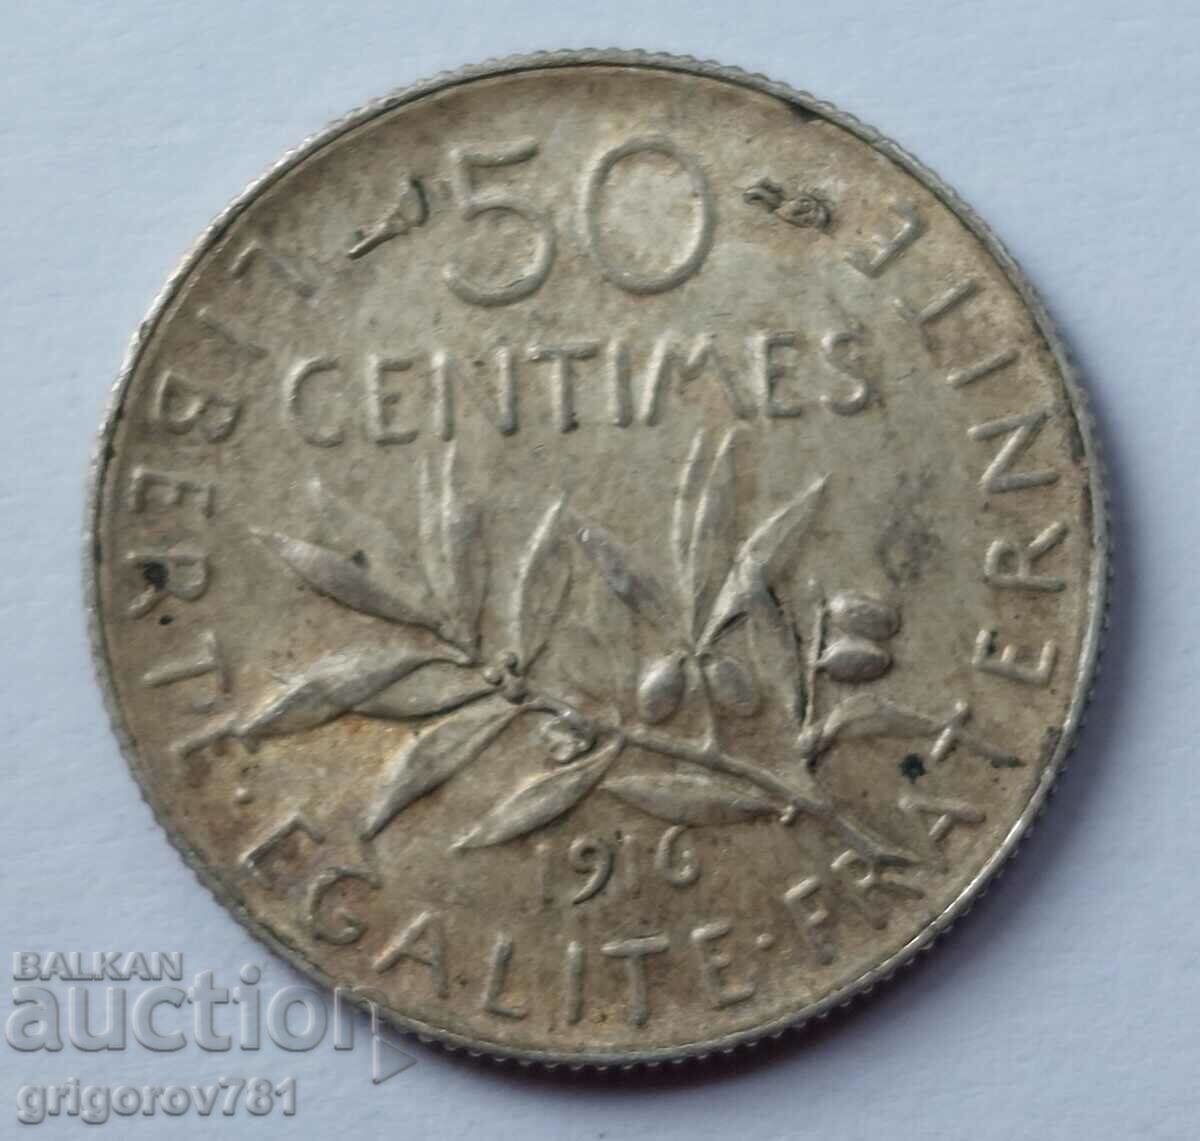 Ασημένιο 50 εκατοστά Γαλλία 1916 - ασημένιο νόμισμα №58